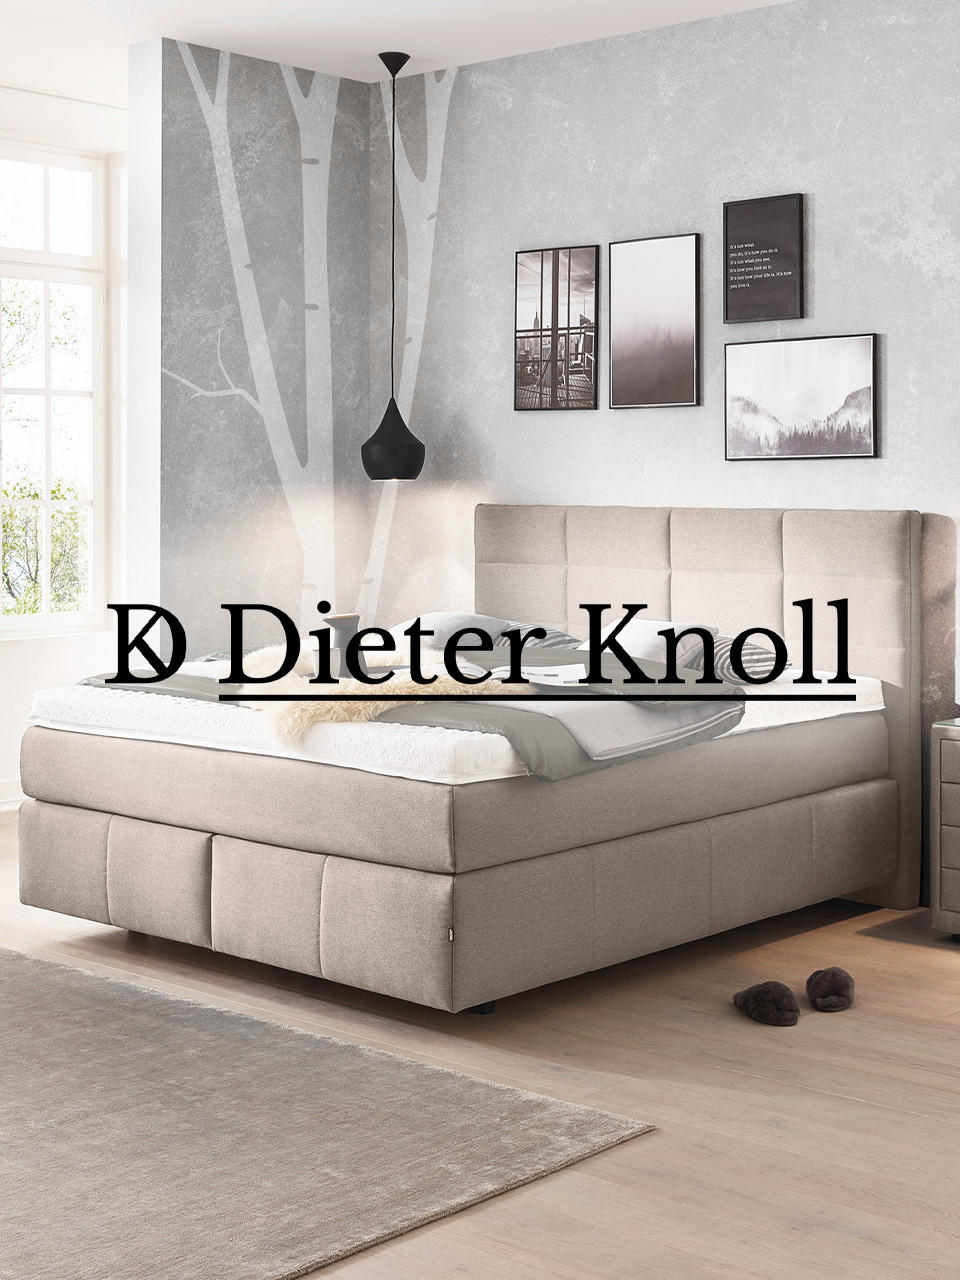 Collection Dieter online Knoll entdecken